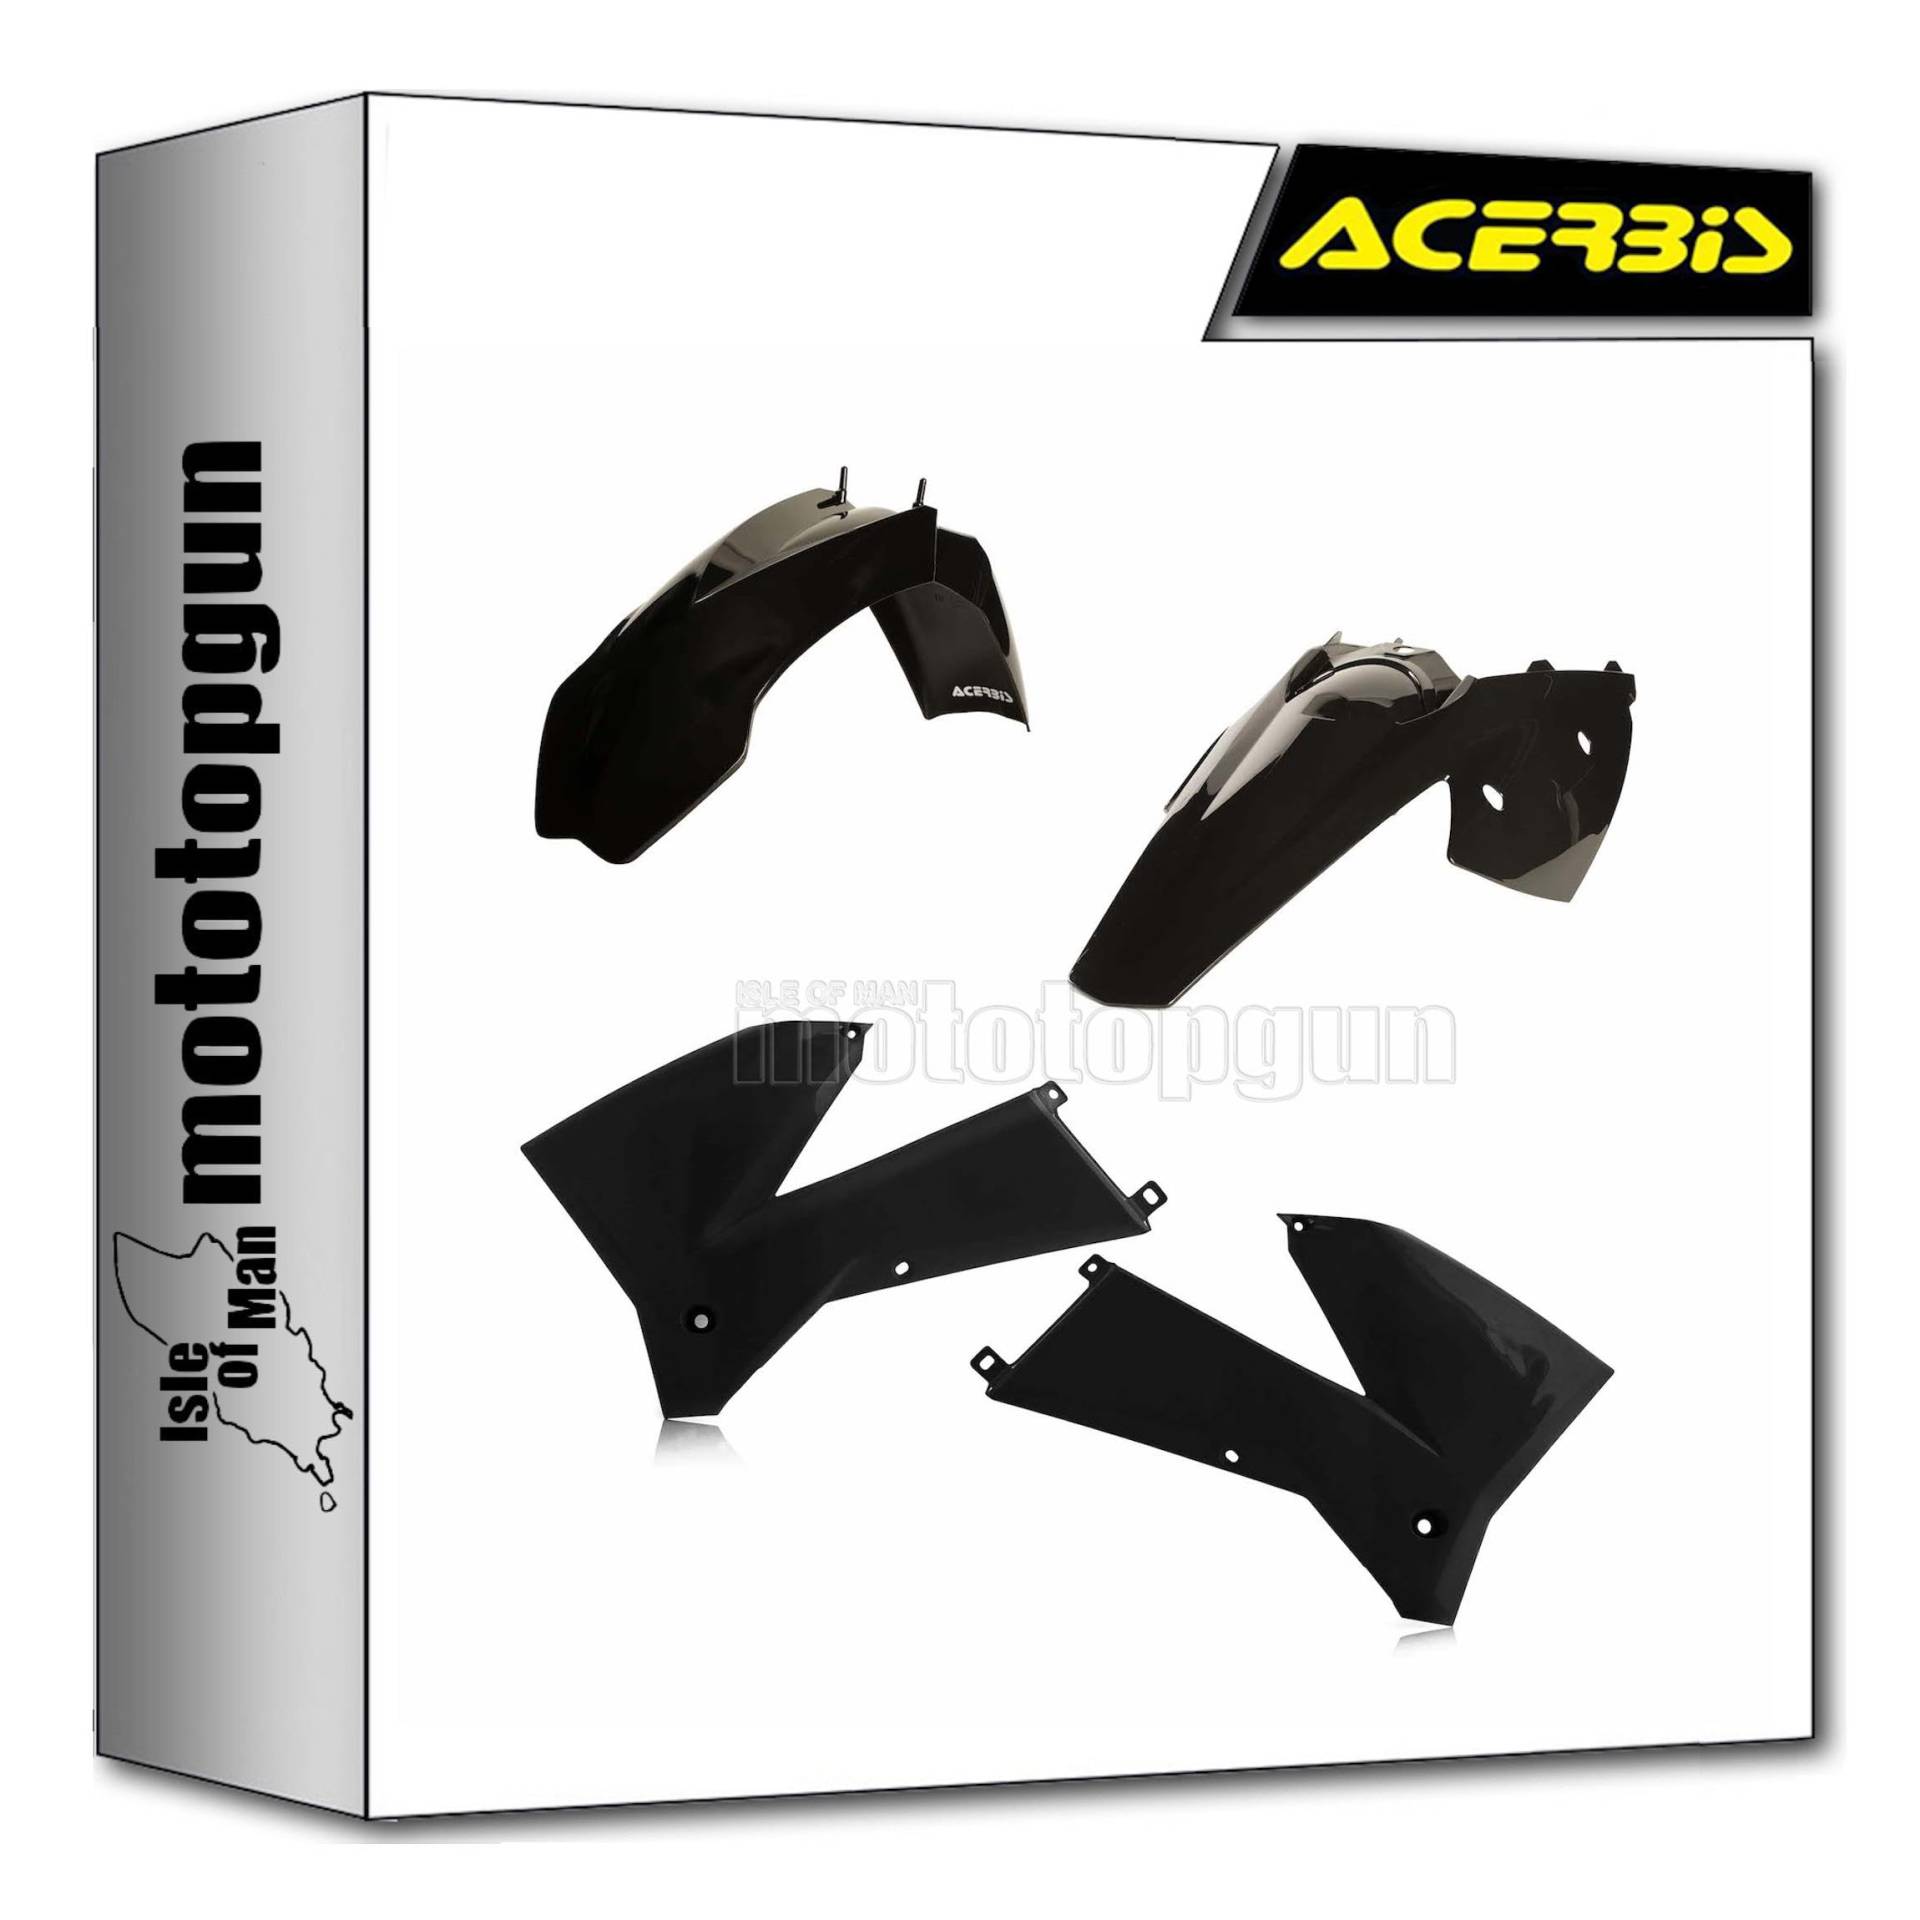 acerbis 0008193.090 plastic kit schwarz kompatibel mit ktm exc-f 400 2005 2006 2007 mototopgun von MOTOTOPGUN